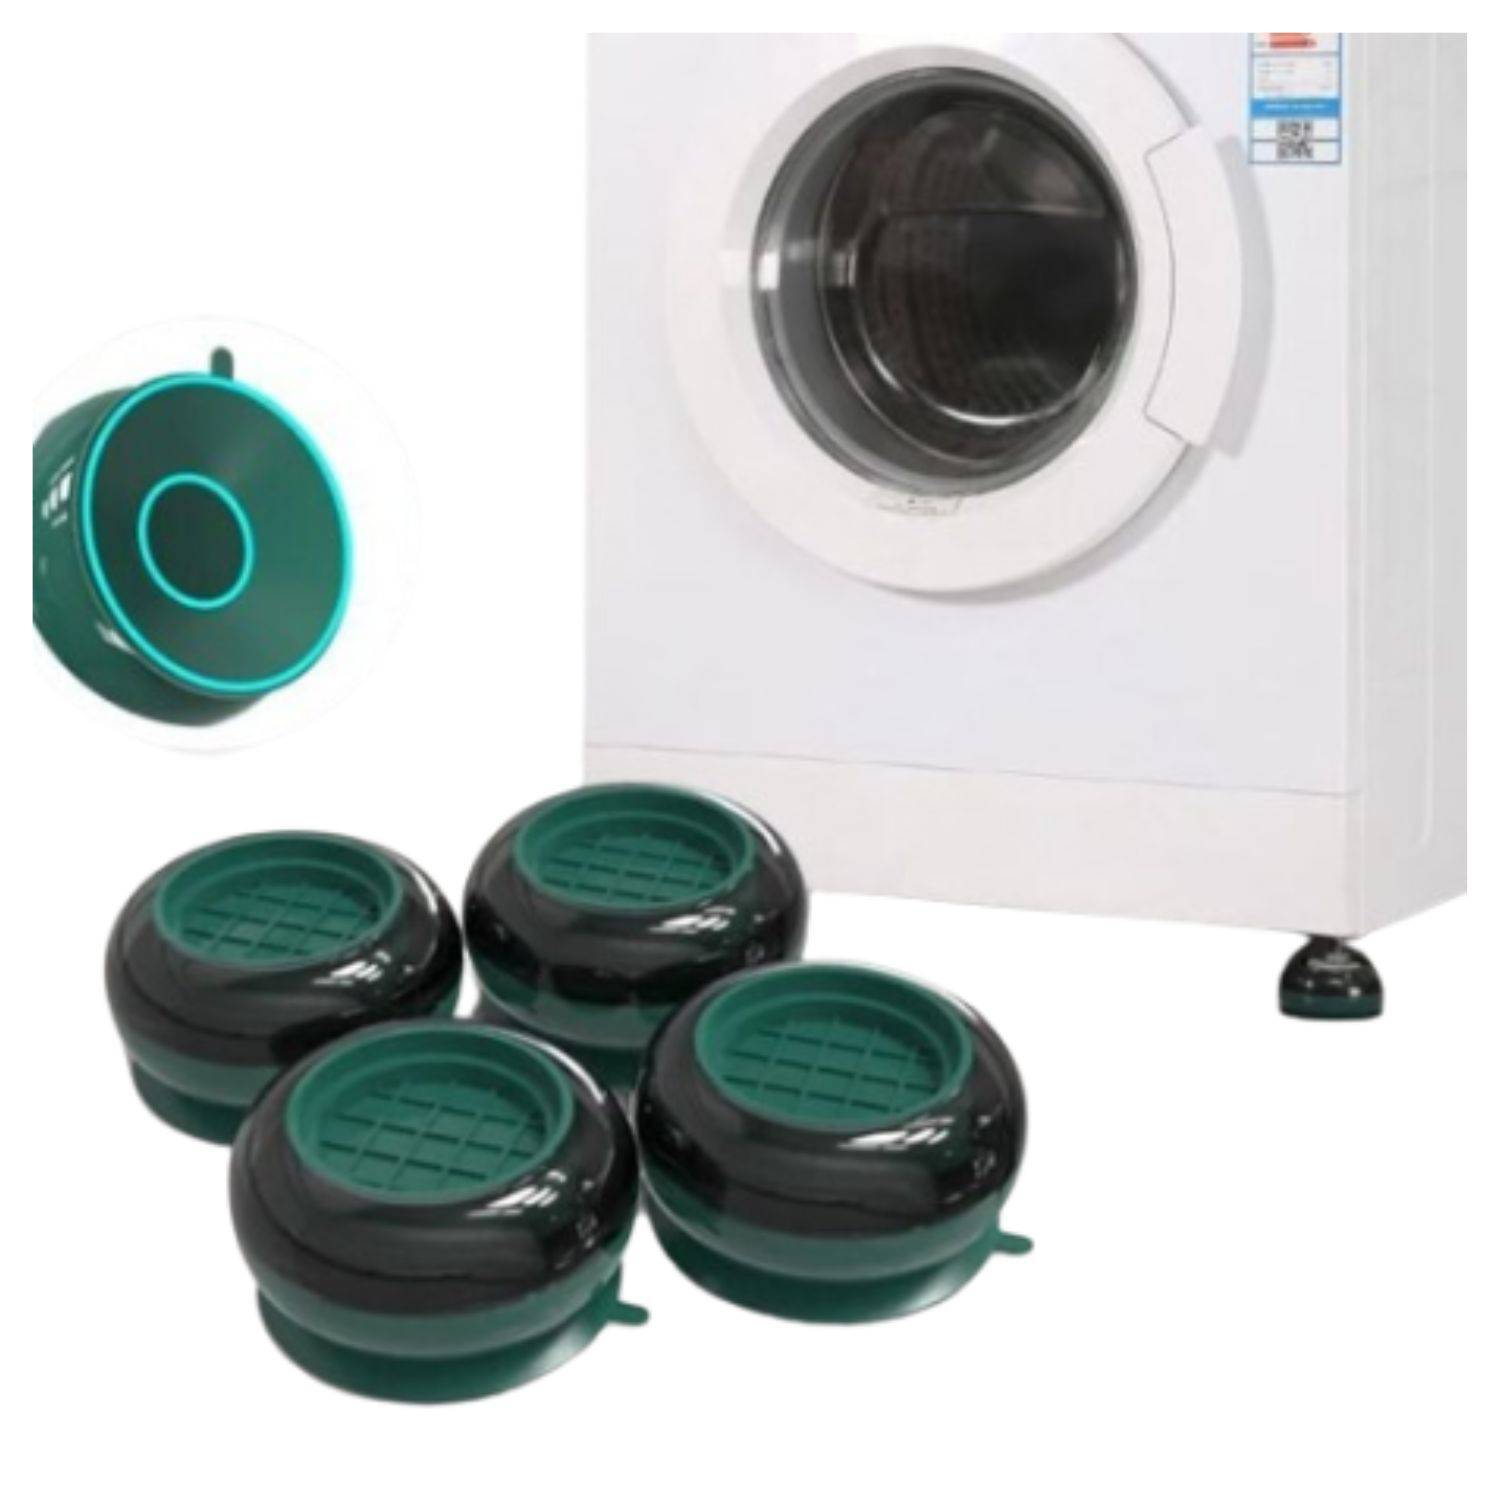 ▷ Chollo Set x4 Almohadillas antivibración para la lavadora por sólo 4,23€  con envío gratis (-20%)